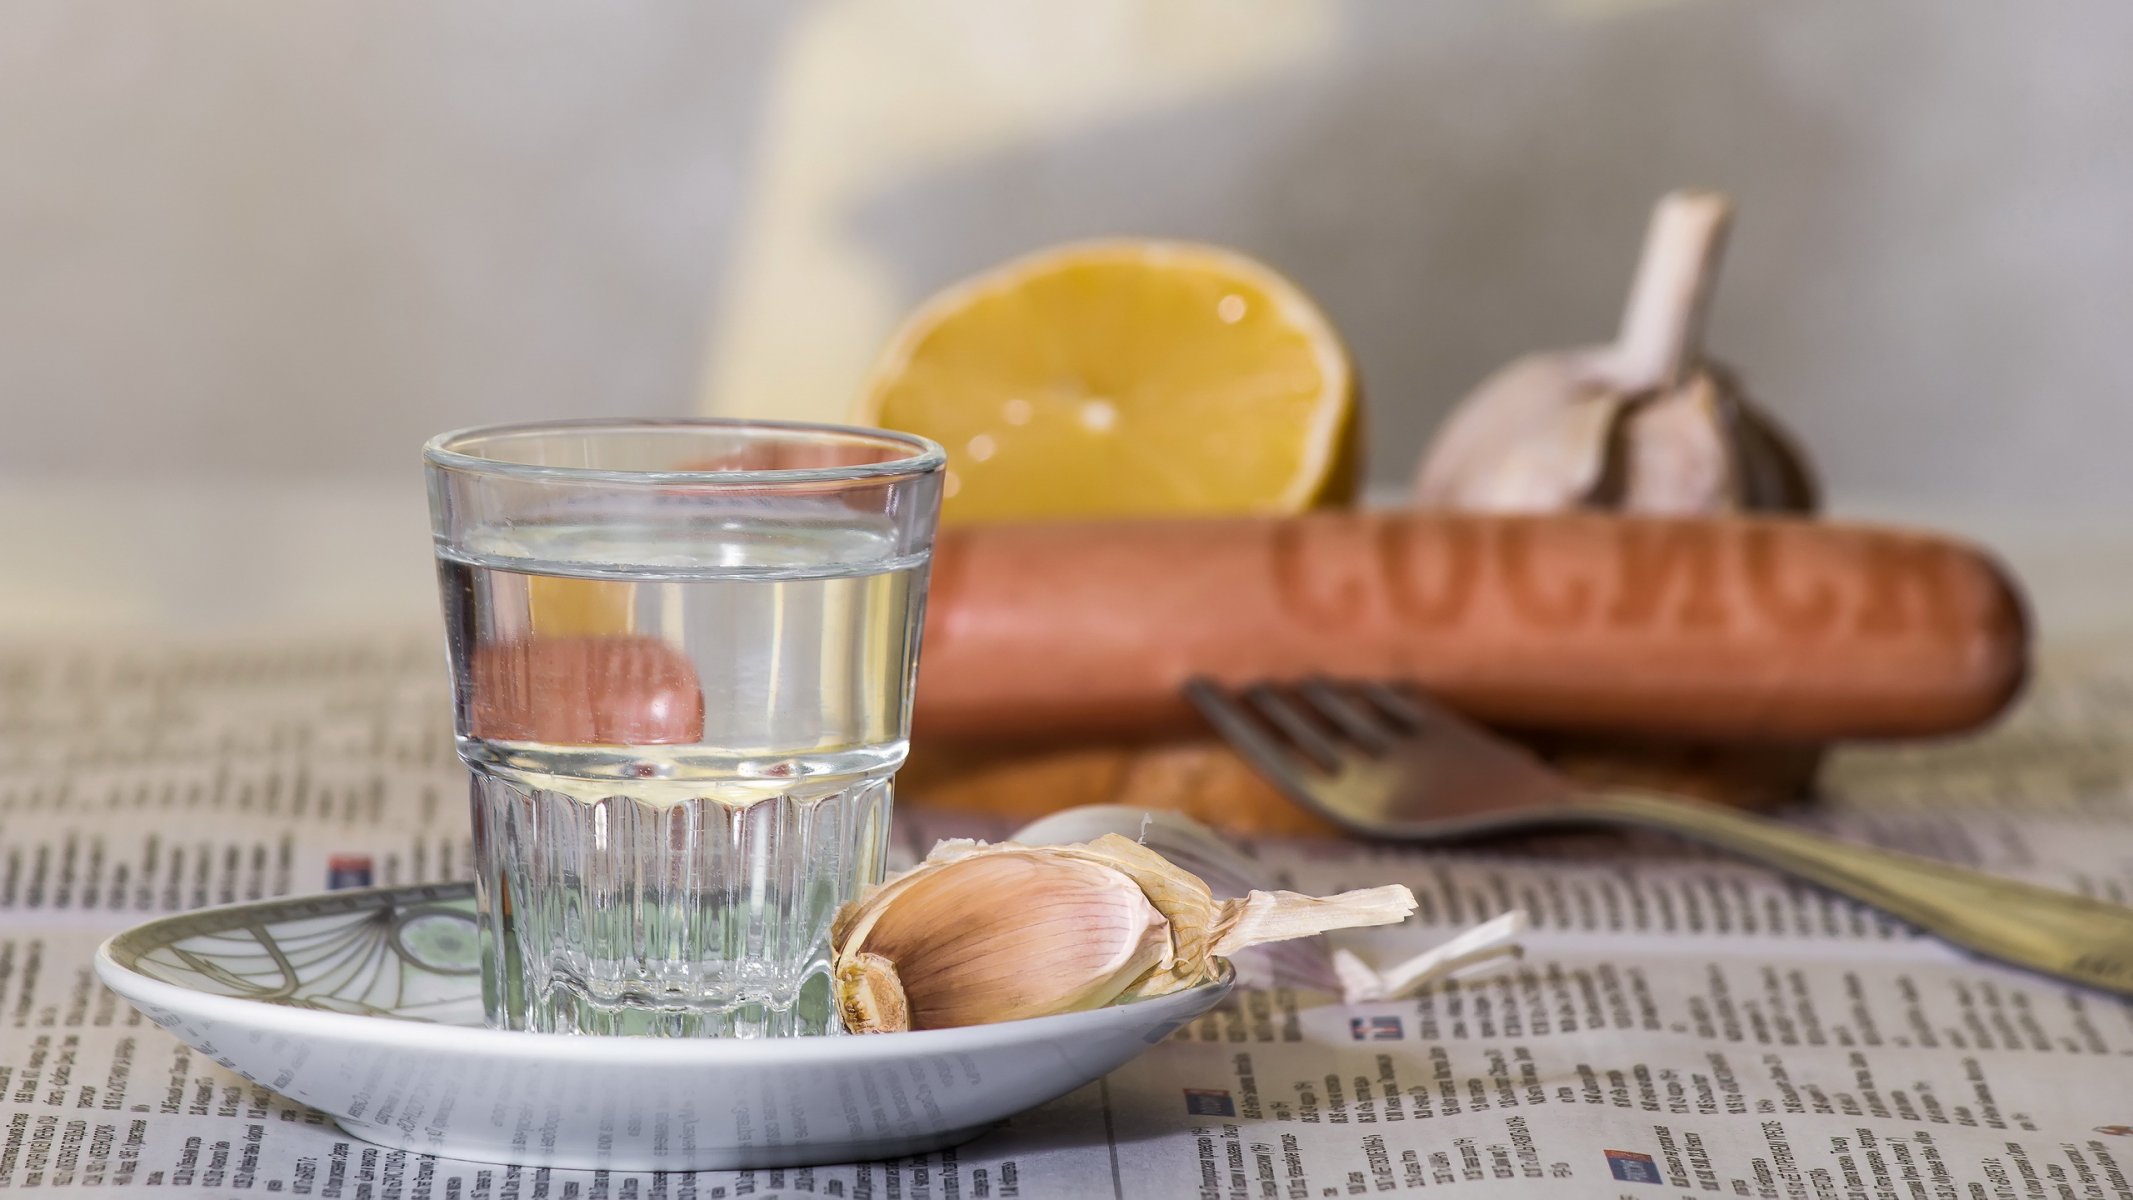 алкоголь водка закуска композиция лимон натюрморт посуда преломления продукты рюмка сосиска чеснок